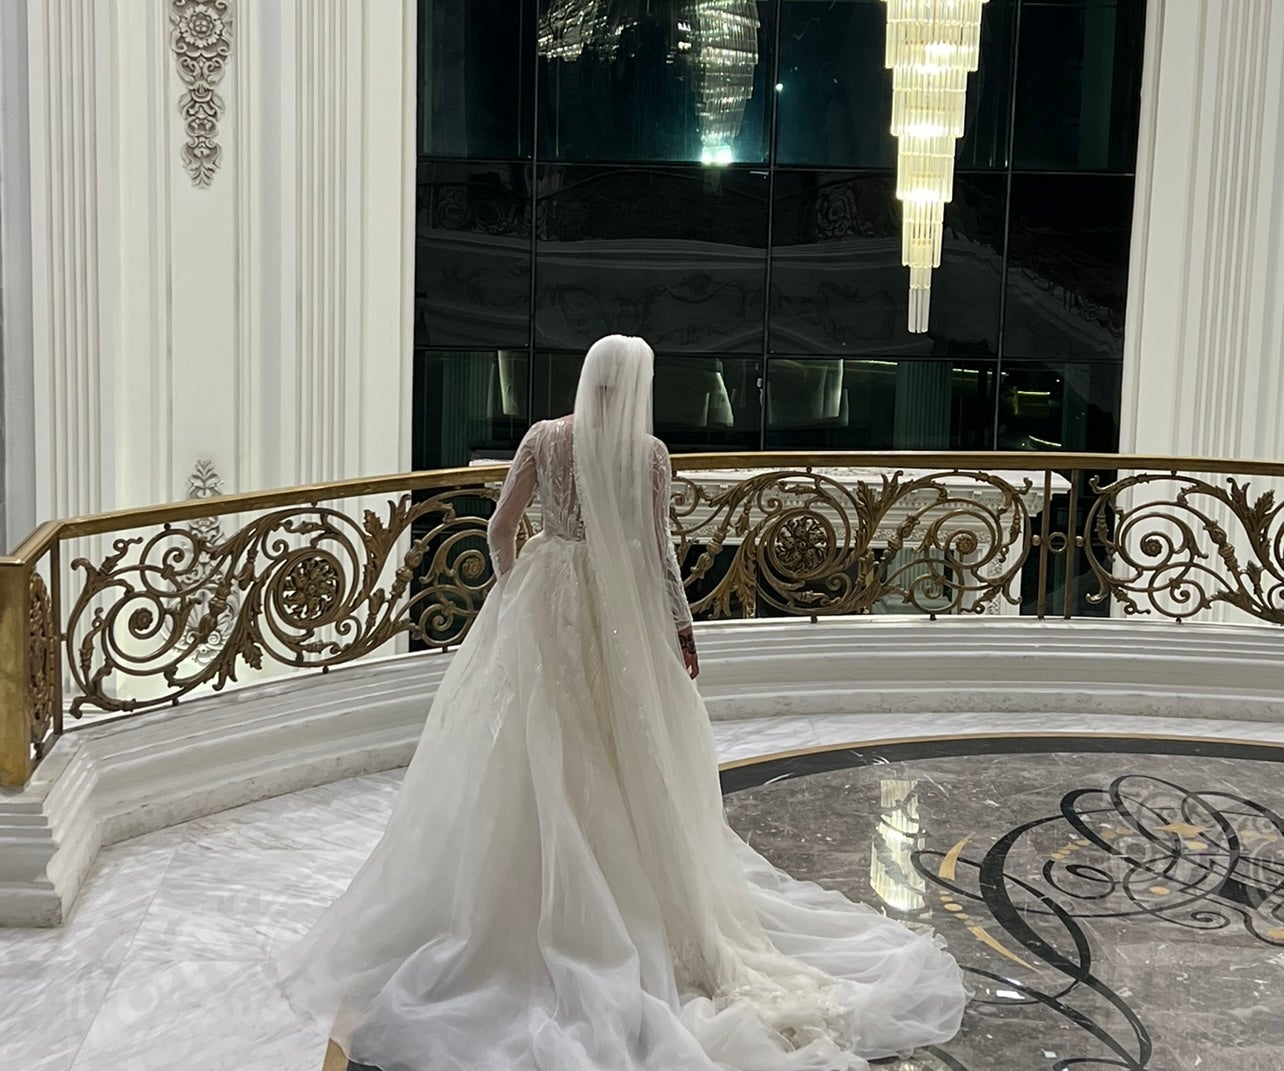 Zinab weds Ahmed: Egyptian and Sudanese wedding